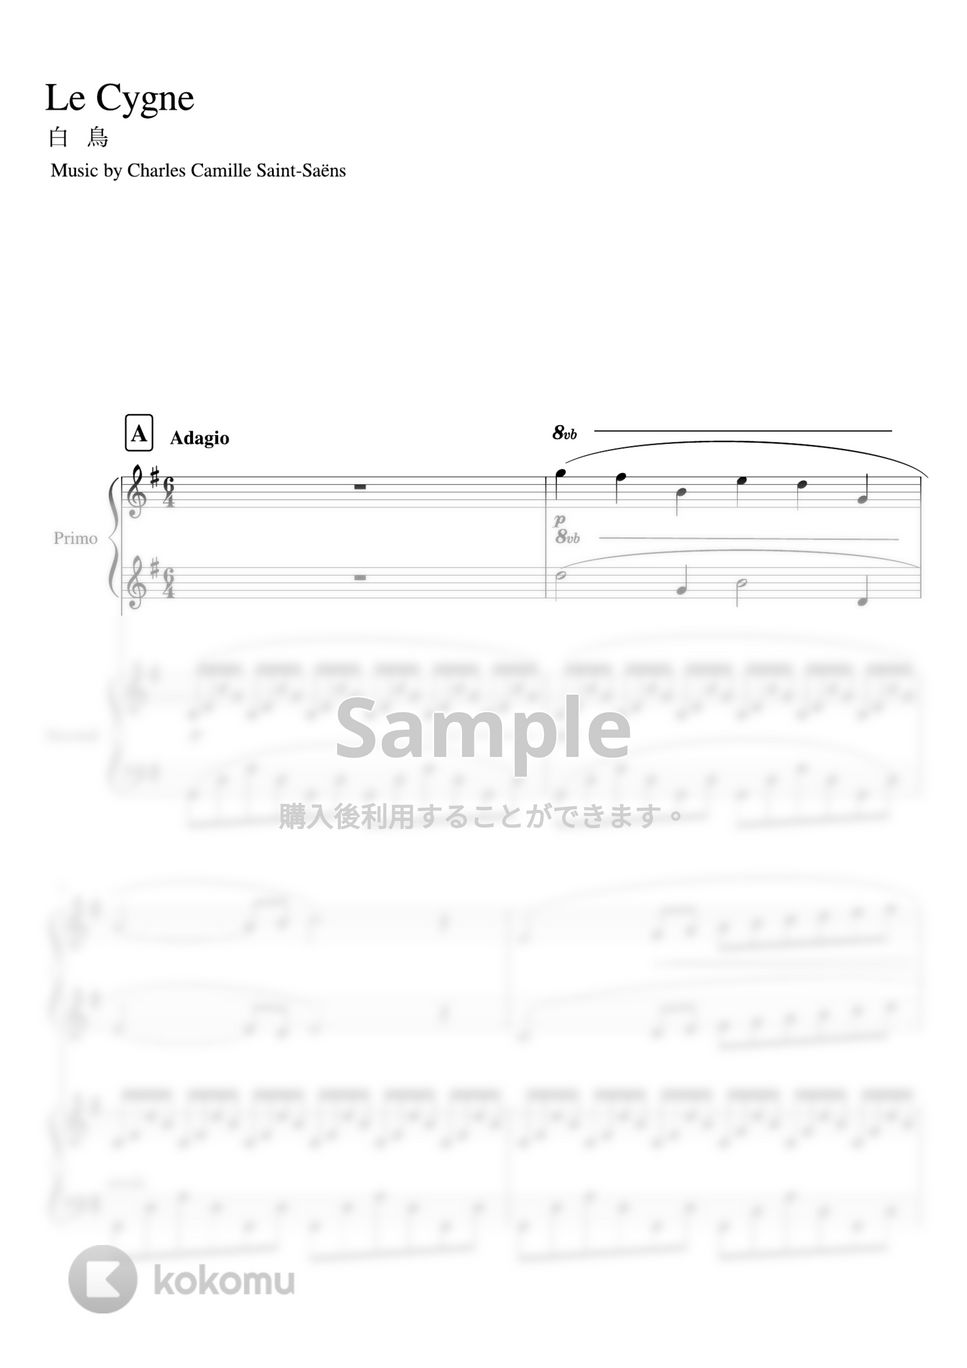 サンサーンス - 「白鳥」ピアノ連弾(先生と生徒) (ピアノ連弾・セカンド・中級/プリモ・初級) by pfkaori